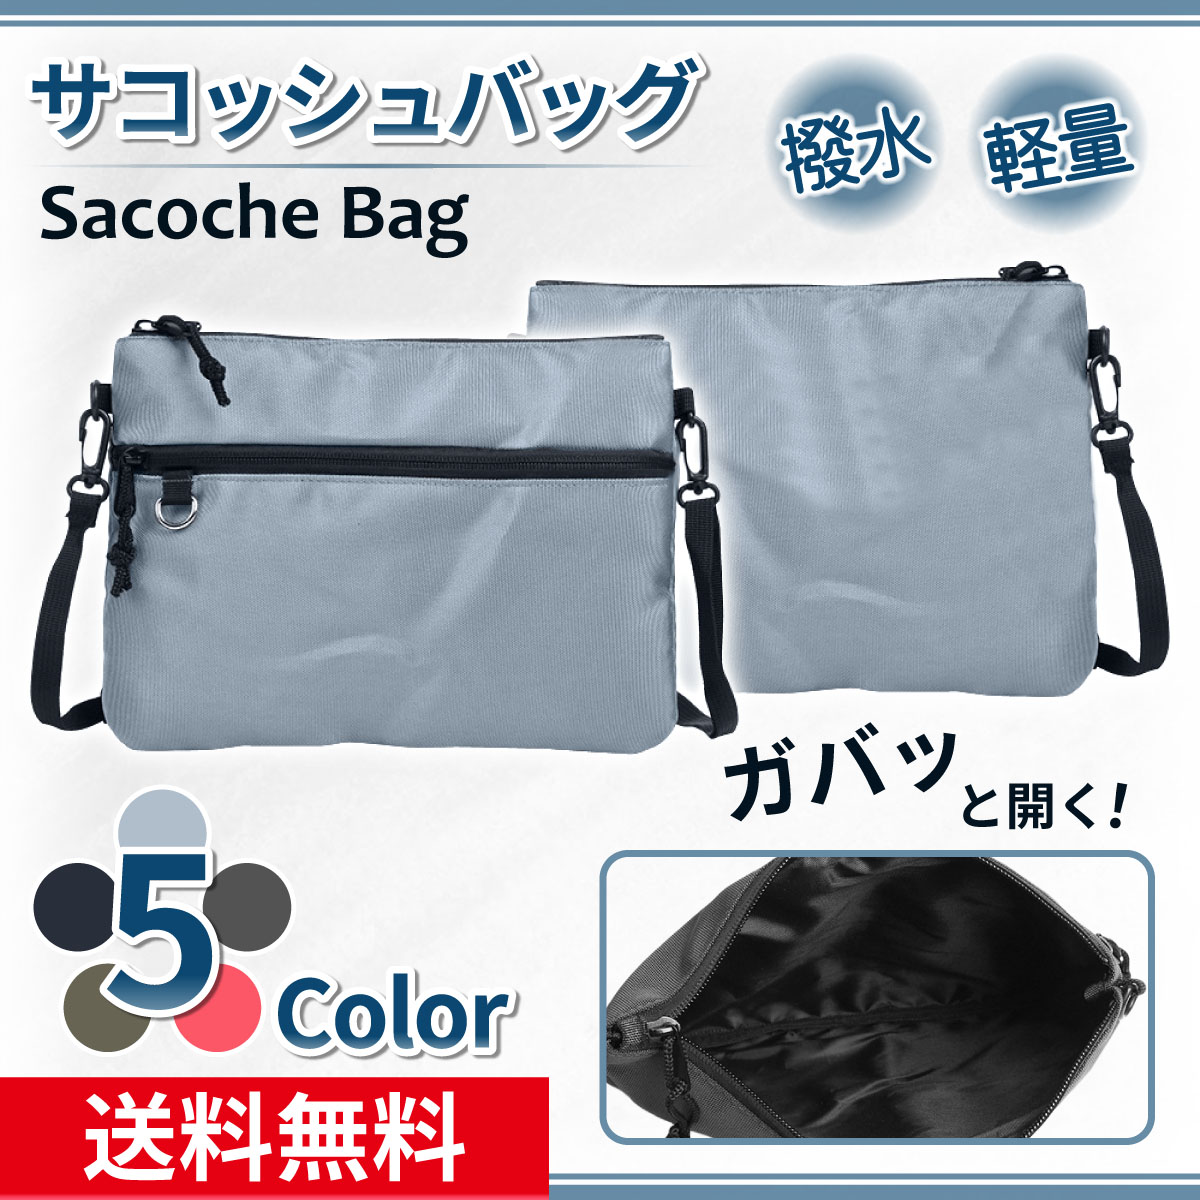 sakoshu сумка на плечо мужской женский модный сумка наклонный .. легкий одноцветный Mini маленький водоотталкивающий кемпинг отдых прогулка развлечение выход 